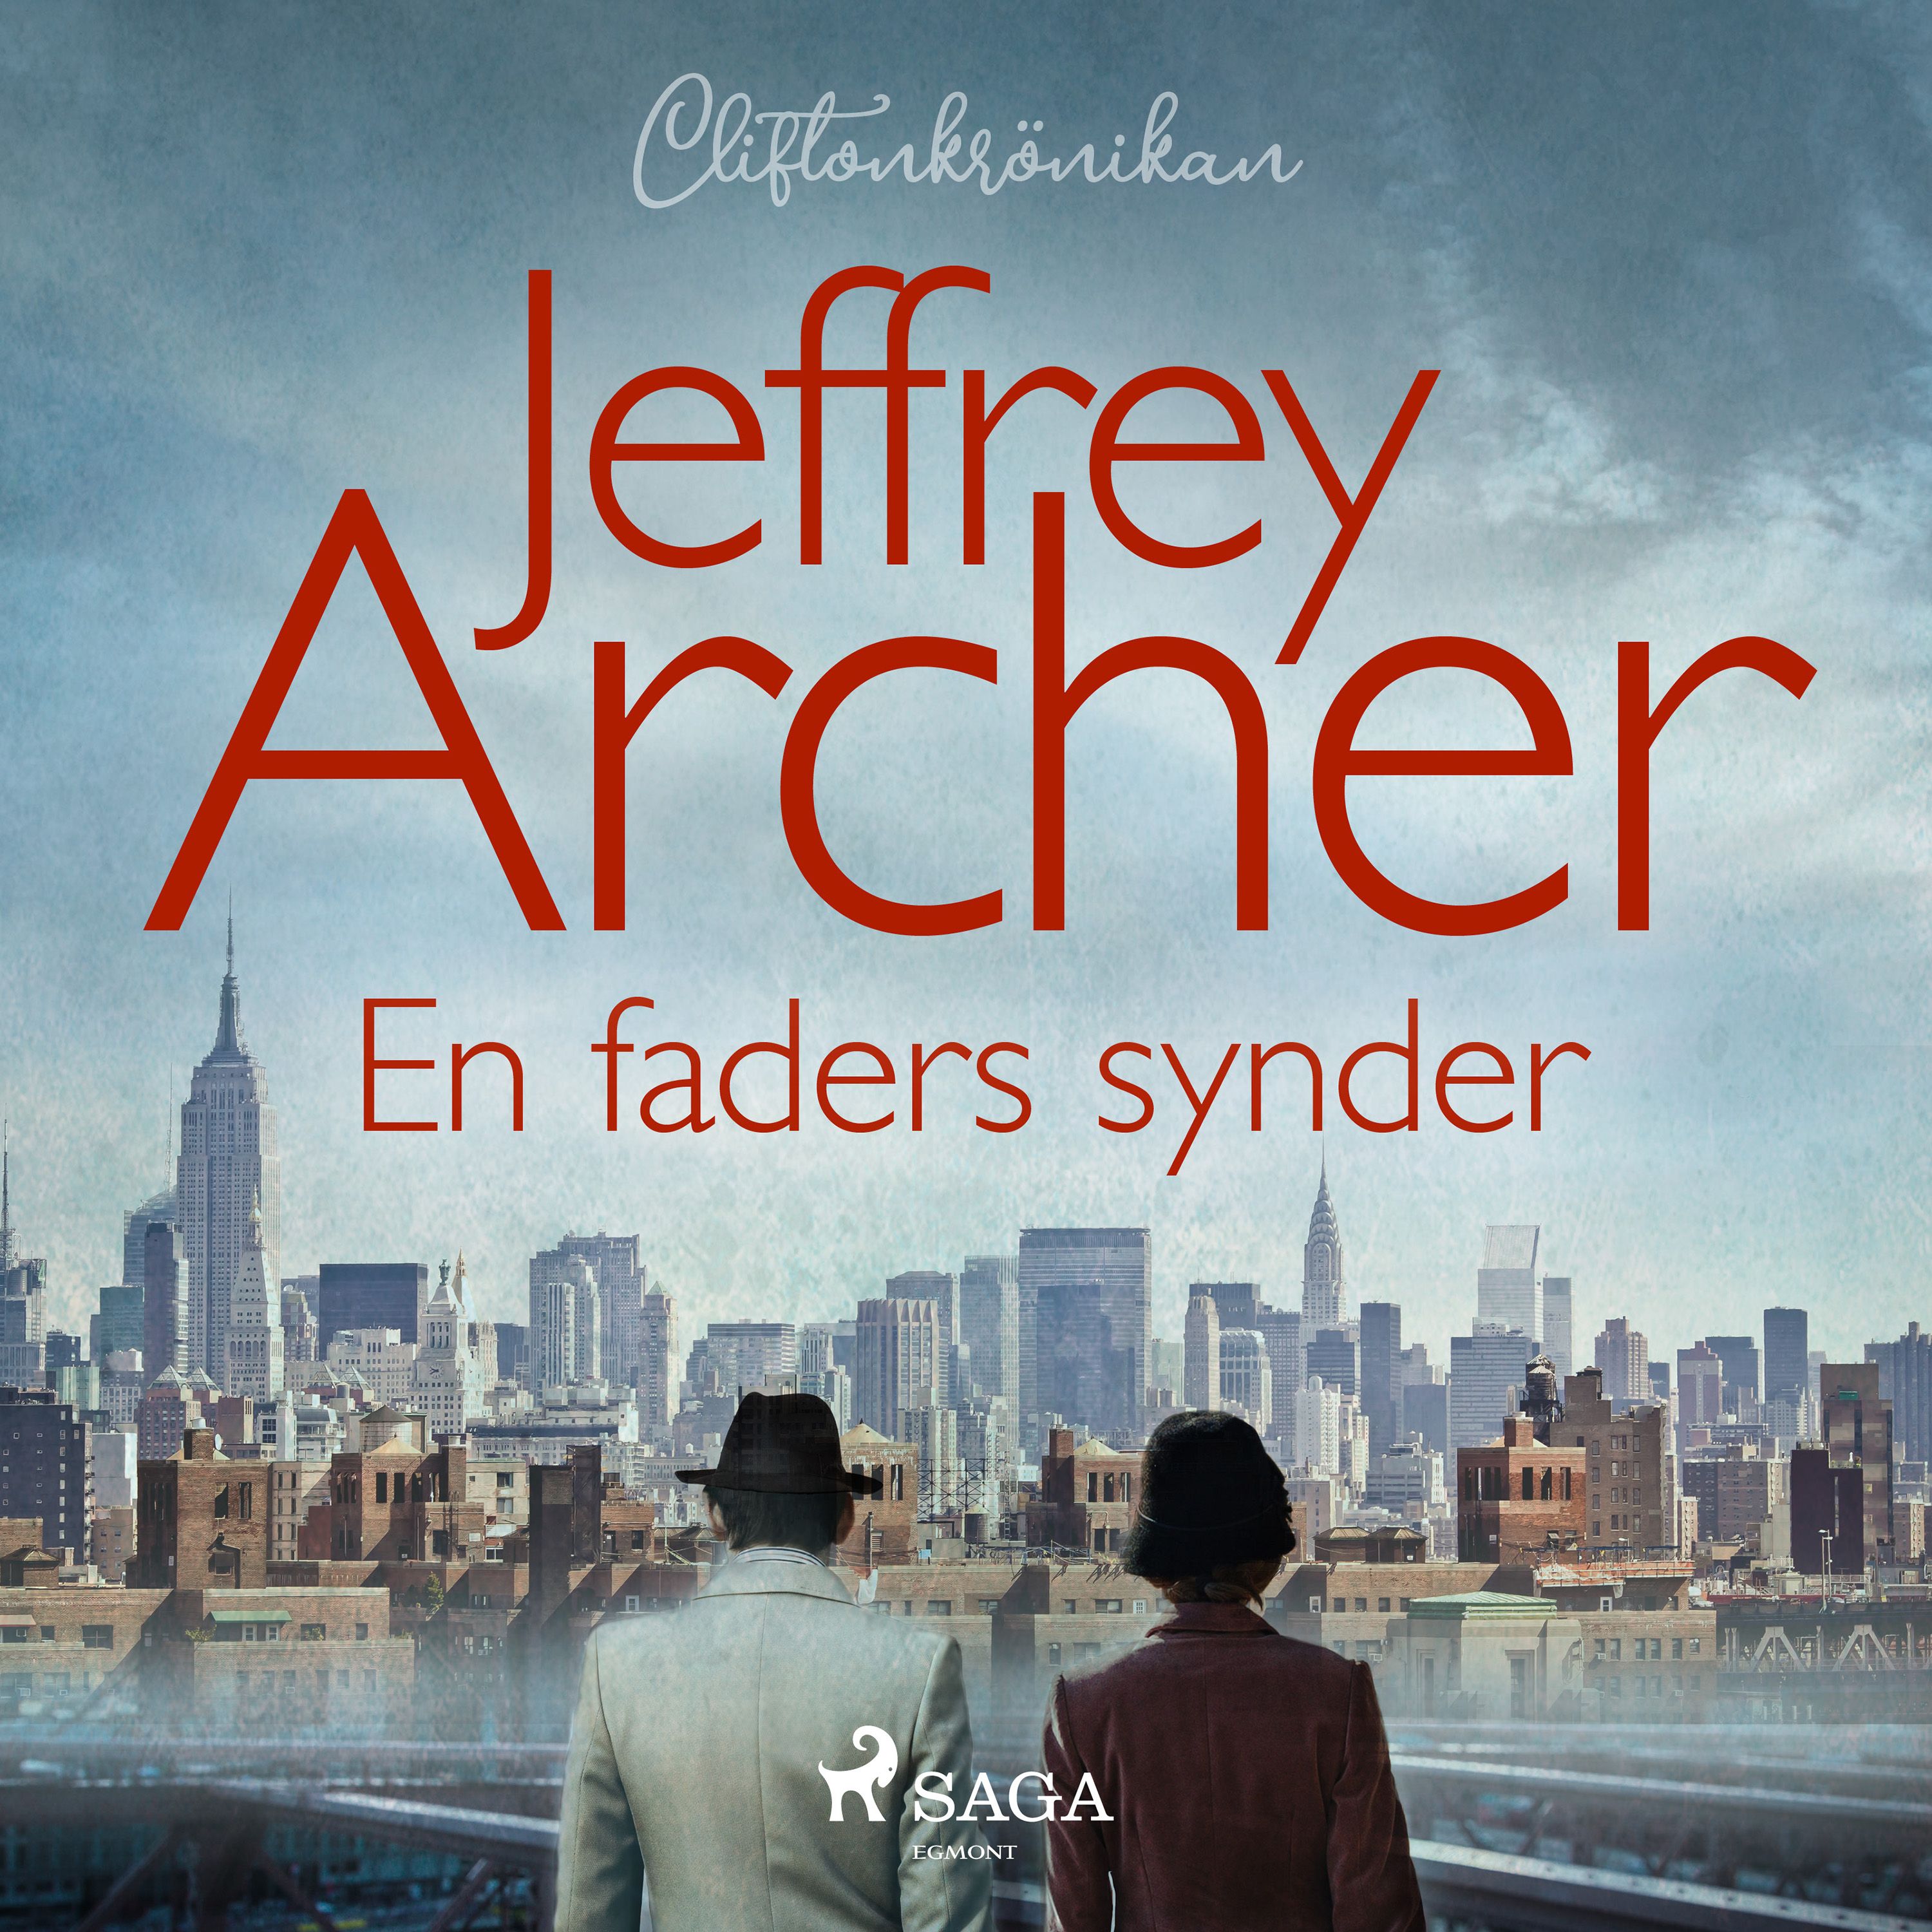 En faders synder, ljudbok av Jeffrey Archer